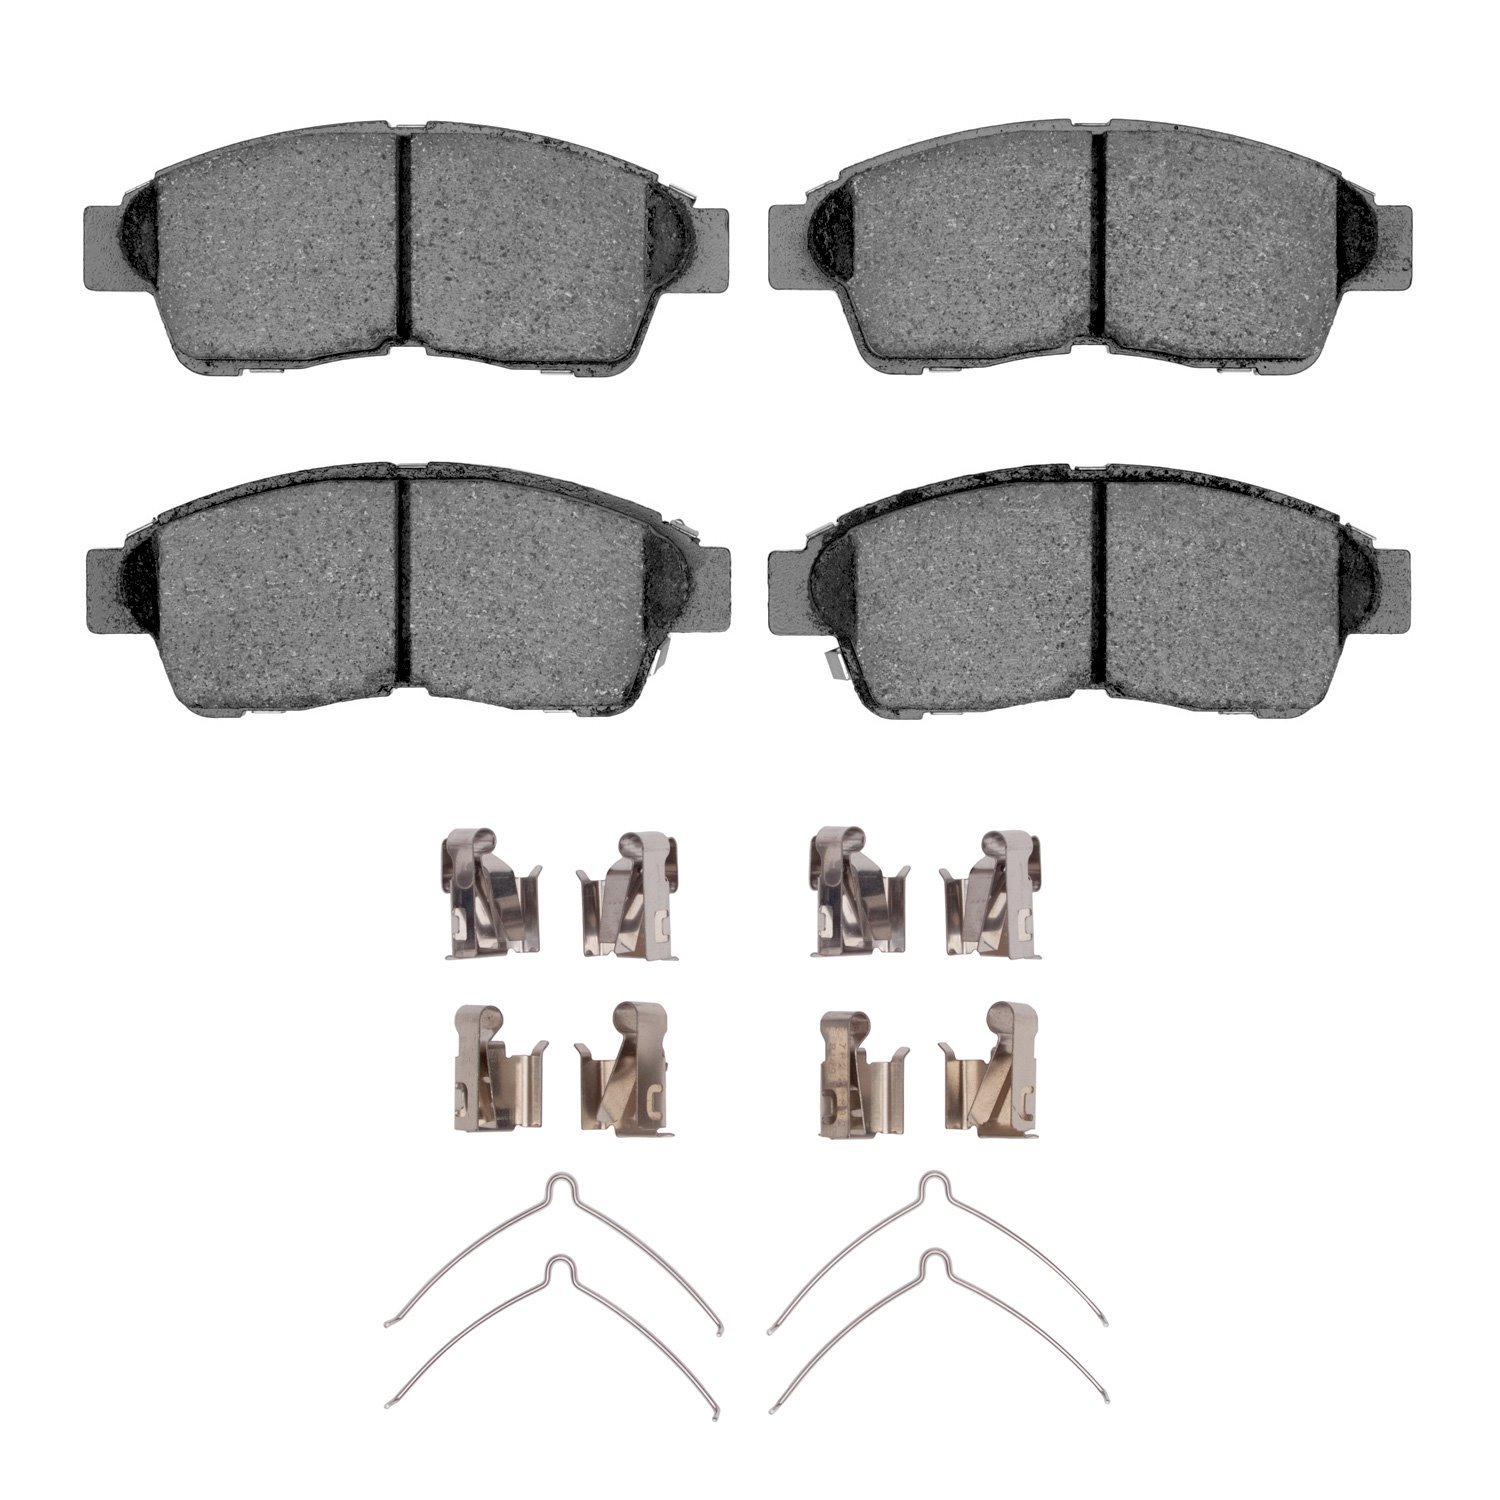 Ceramic Brake Pads & Hardware Kit, 1992-2003 Fits Multiple Makes/Models, Position: Front